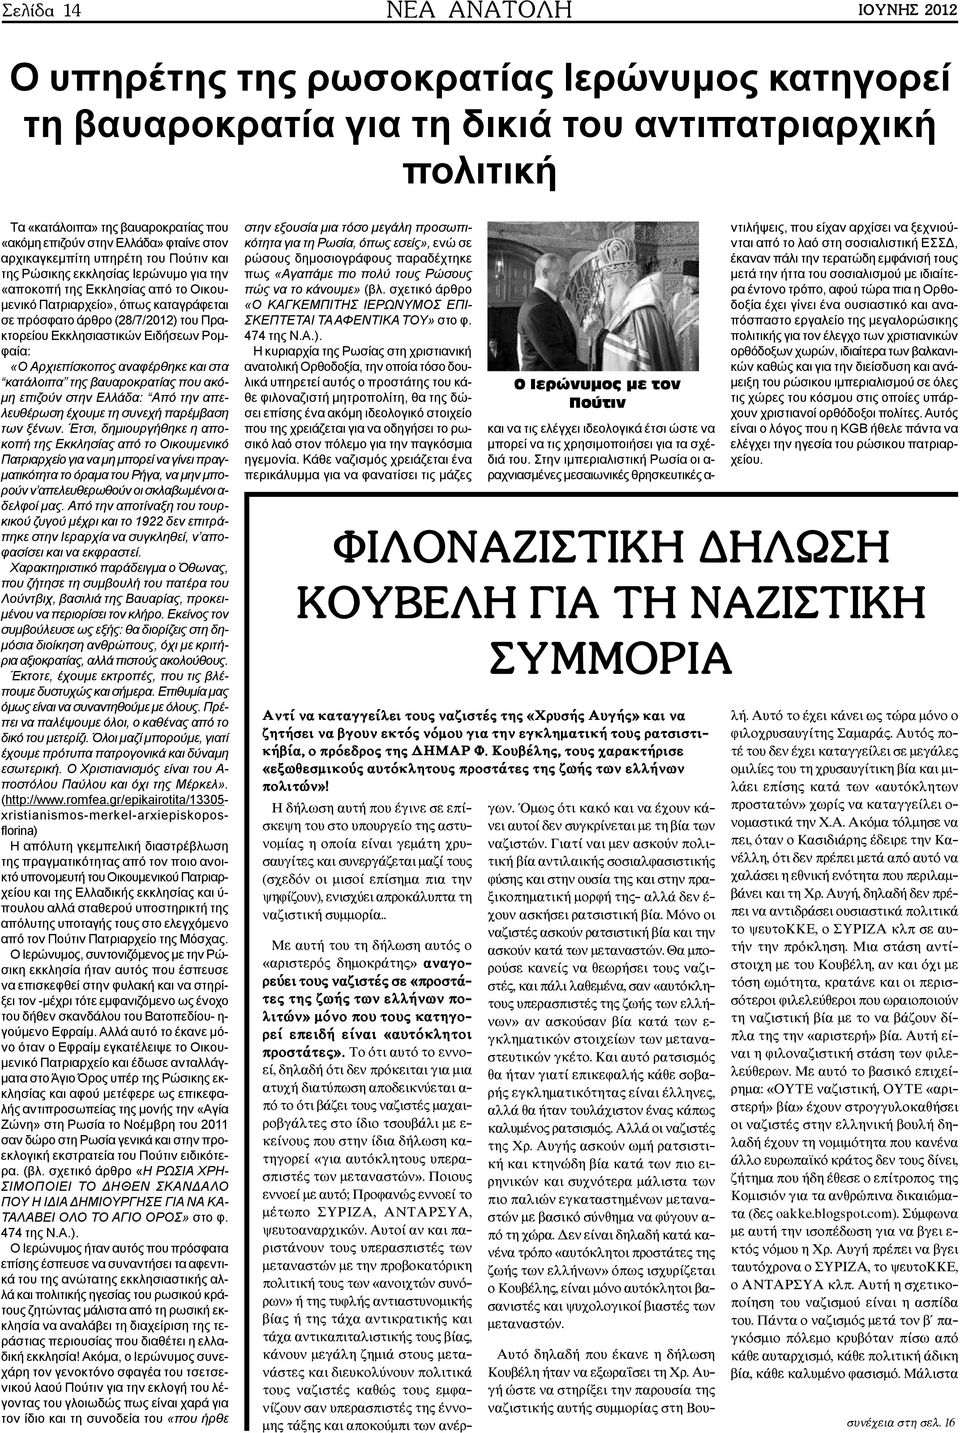 (28/7/2012) του Πρακτορείου Εκκλησιαστικών Ειδήσεων Ρομφαία: «Ο Αρχιεπίσκοπος αναφέρθηκε και στα κατάλοιπα της βαυαροκρατίας που ακόμη επιζούν στην Ελλάδα: Από την απελευθέρωση έχουμε τη συνεχή